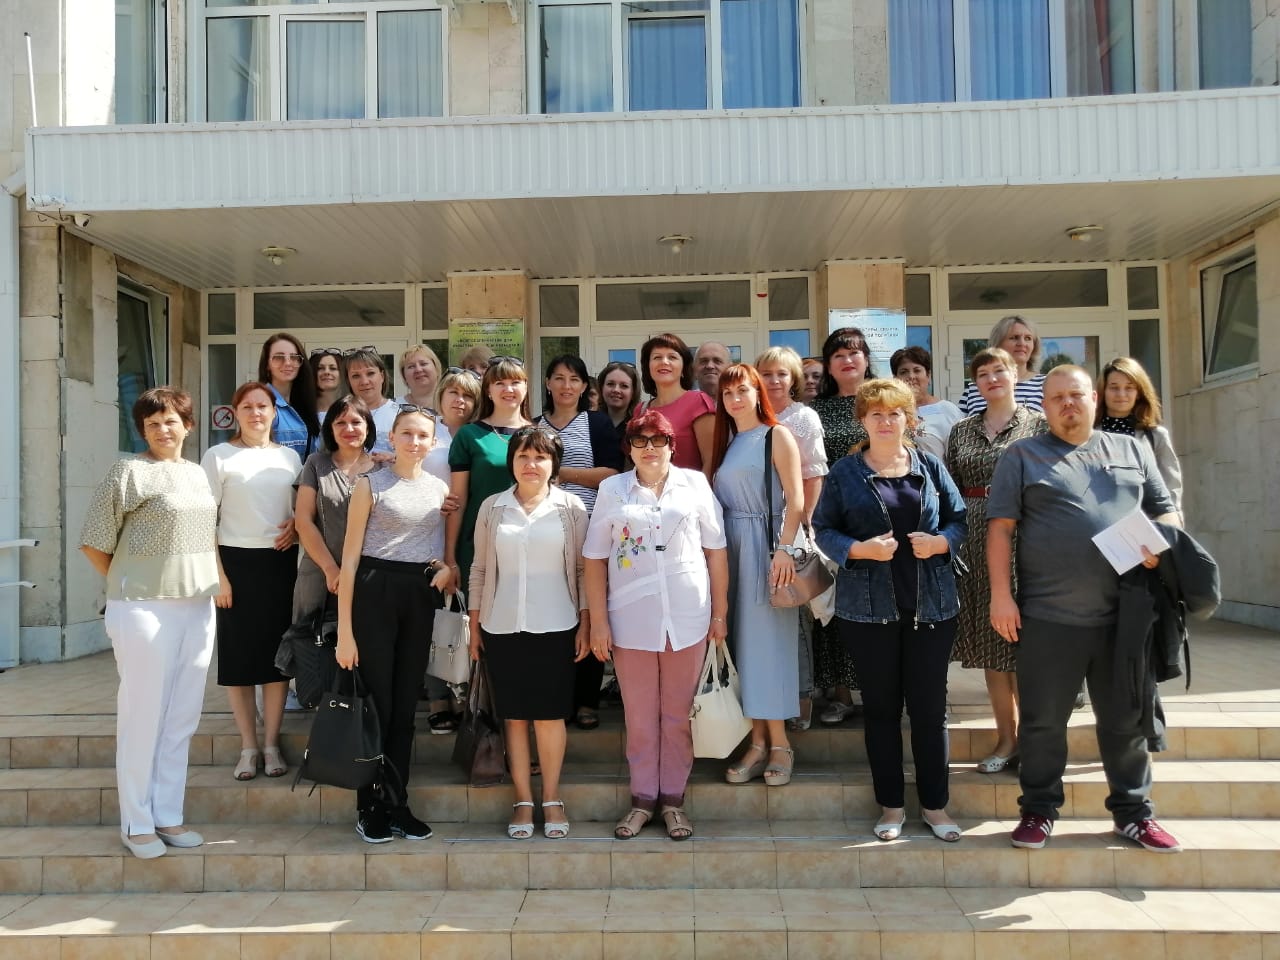 Организаторы и участники семинара перед зданием МБУК лДК ст. Казанской